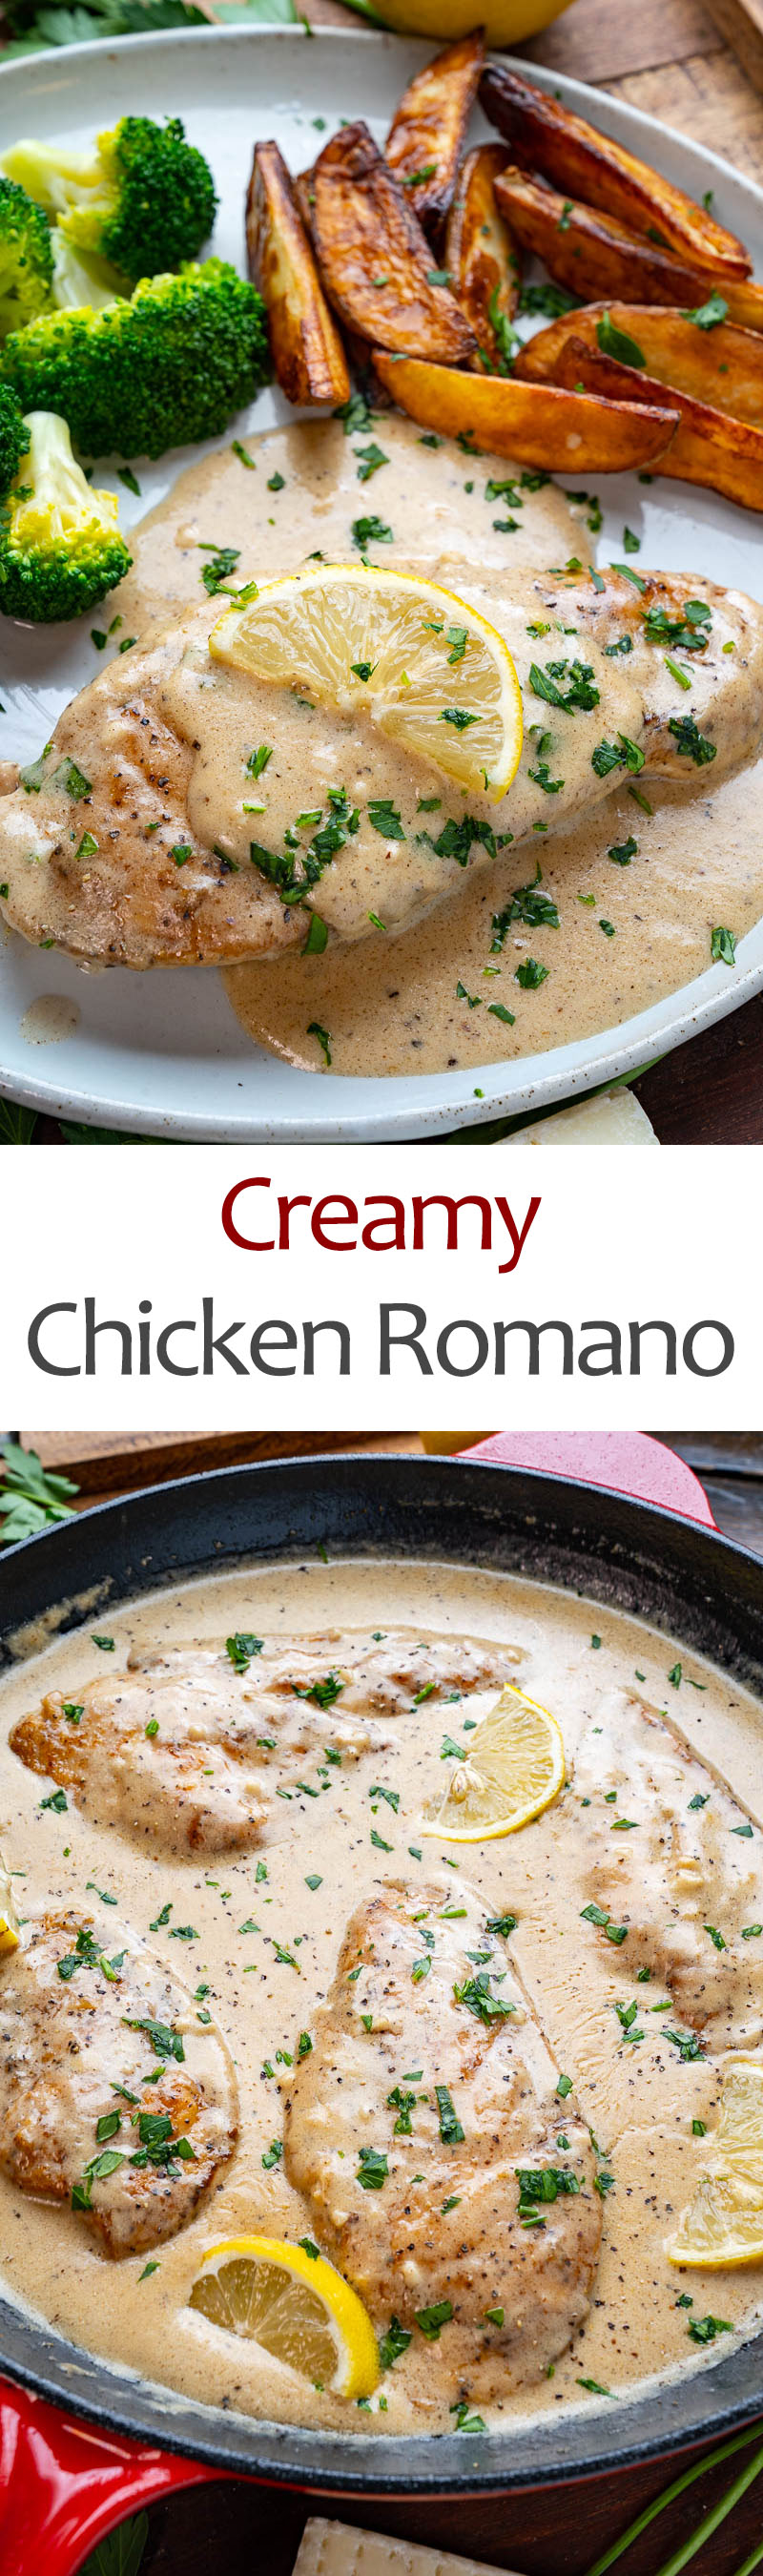 Creamy Chicken Romano